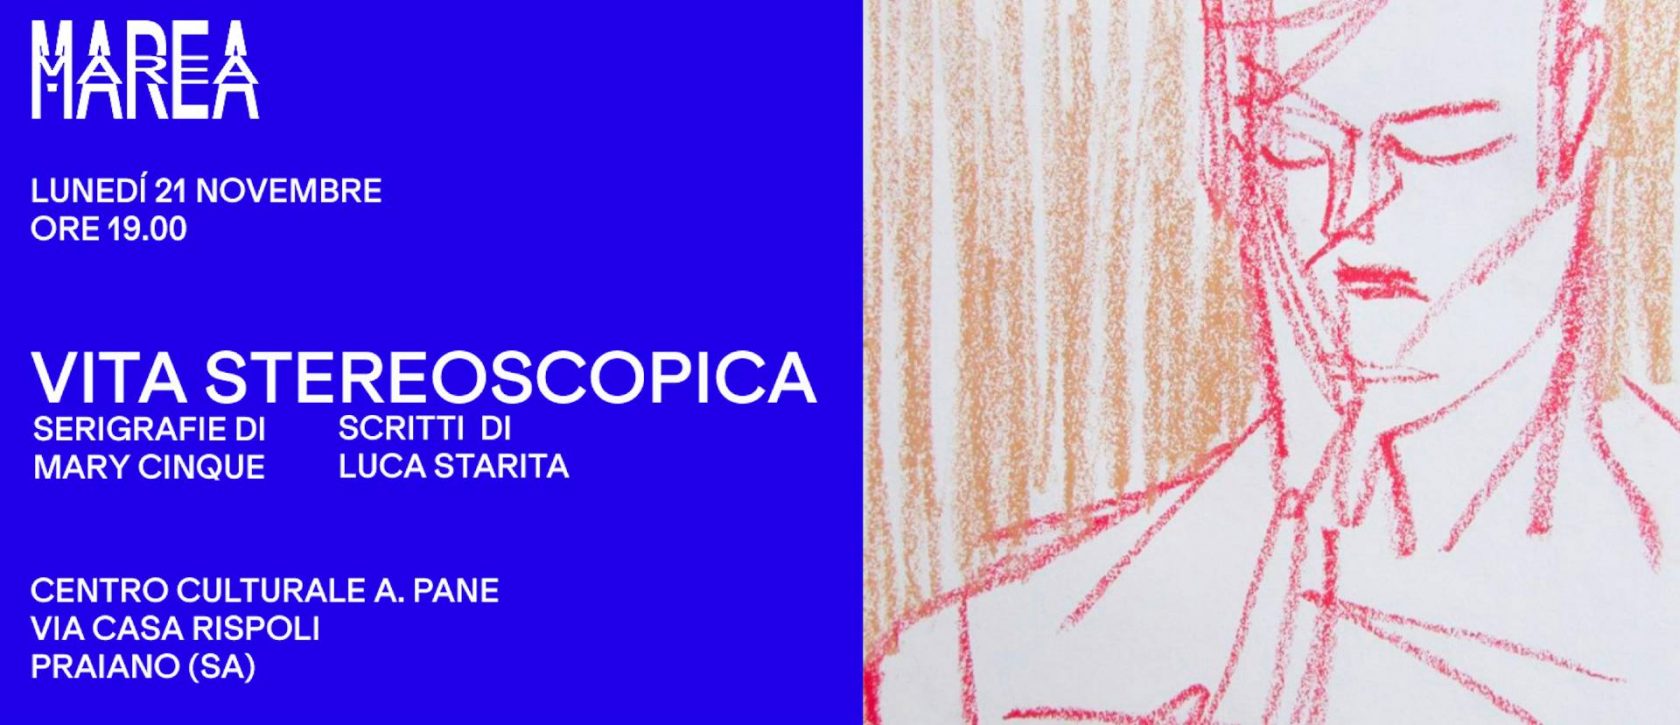 Vita Stereoscopica - Marea Art Project